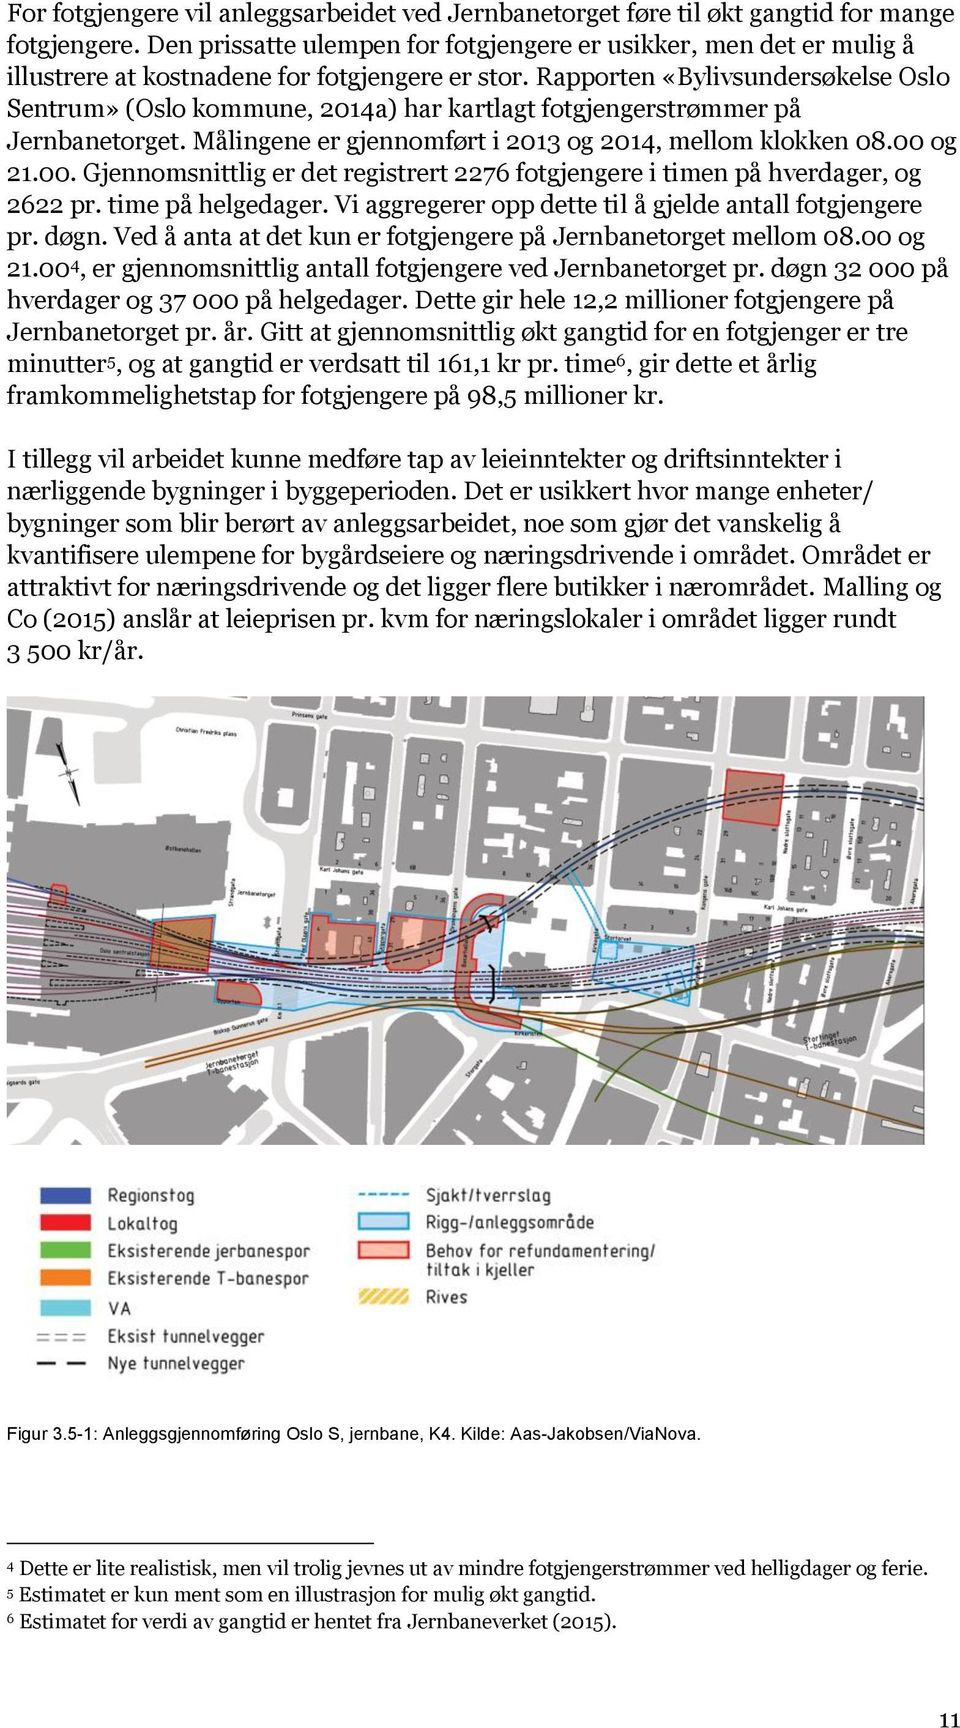 Rapporten «Bylivsundersøkelse Oslo Sentrum» (Oslo kommune, 2014a) har kartlagt fotgjengerstrømmer på Jernbanetorget. Målingene er gjennomført i 2013 og 2014, mellom klokken 08.00 